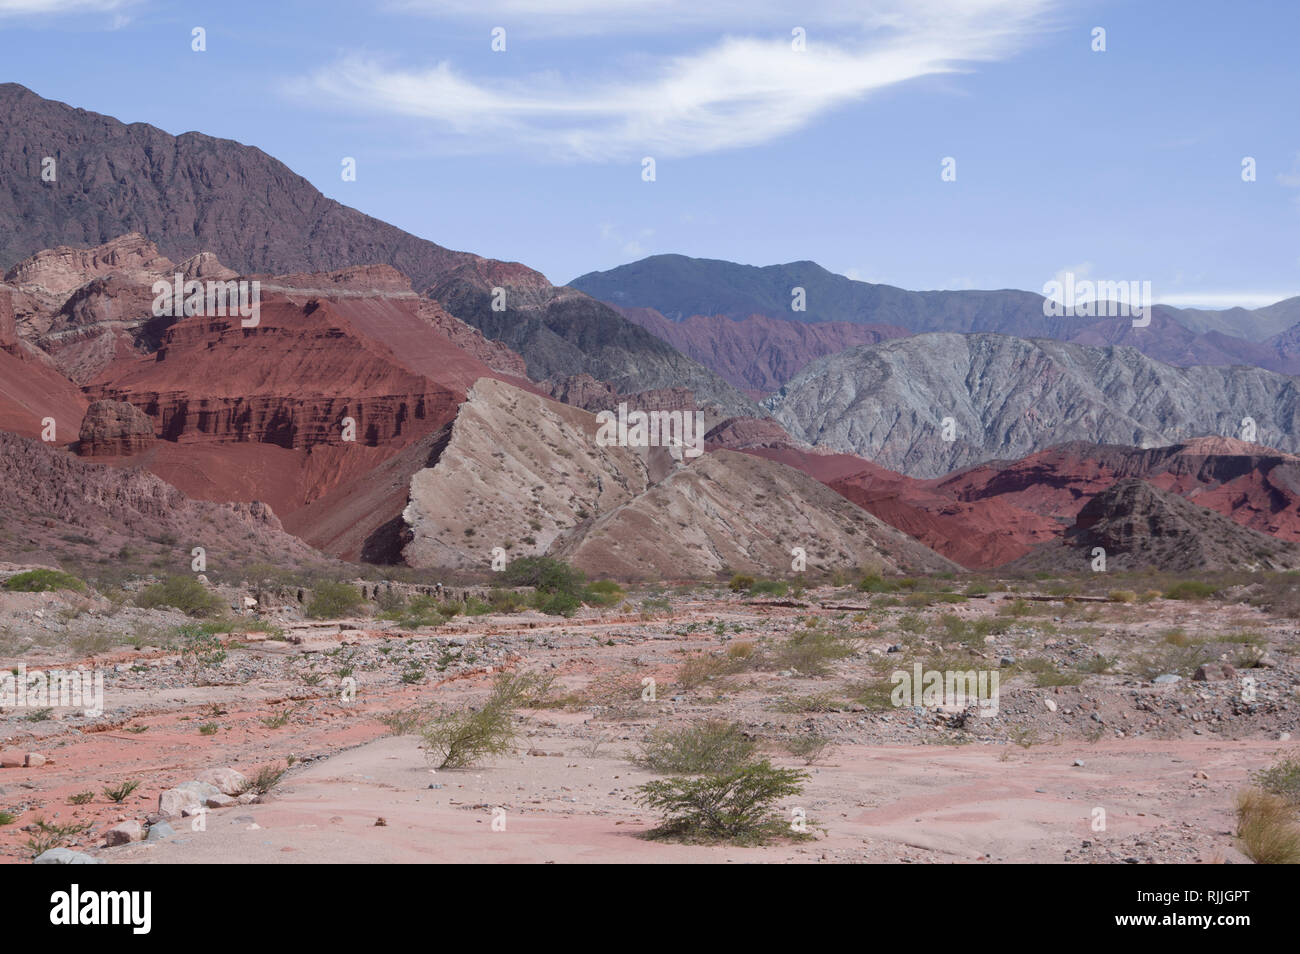 El llamativo hermoso paisaje desértico en el norte de Argentina, cerca de Salta y Juyjuy con mesetas de arenisca roja ríos y coloridos cerros Foto de stock